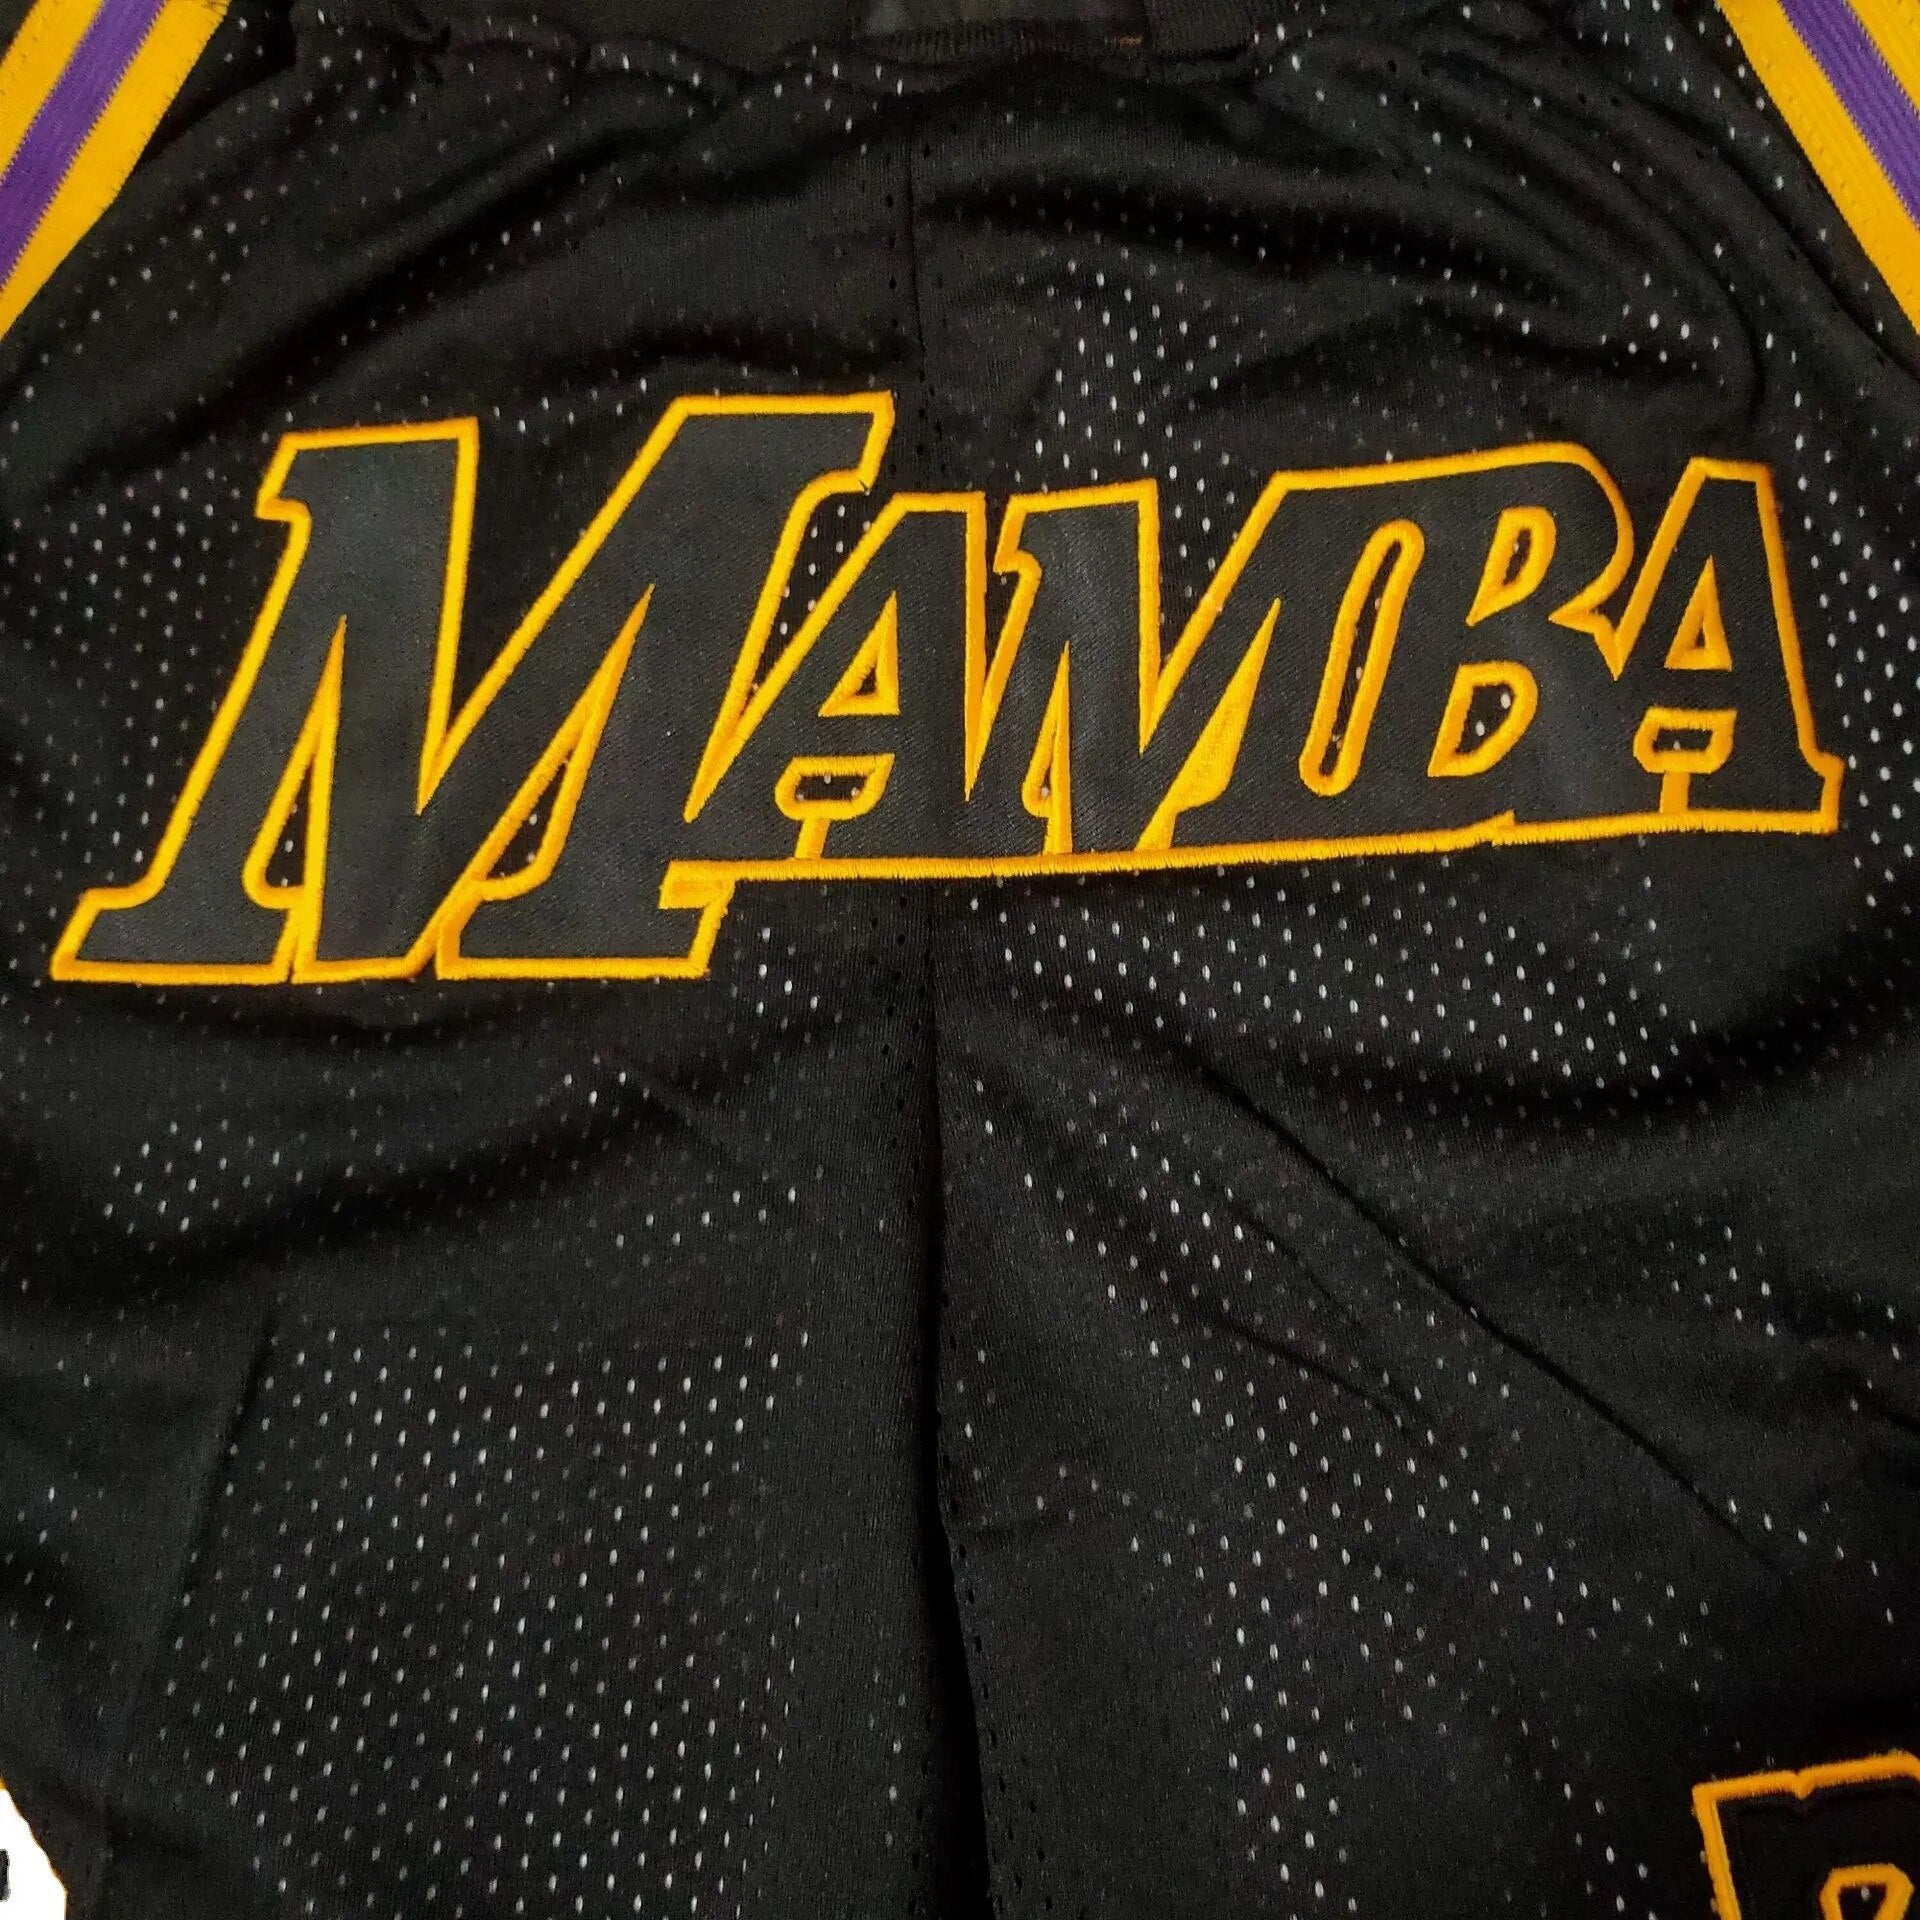 MAMBA Basketball Shorts